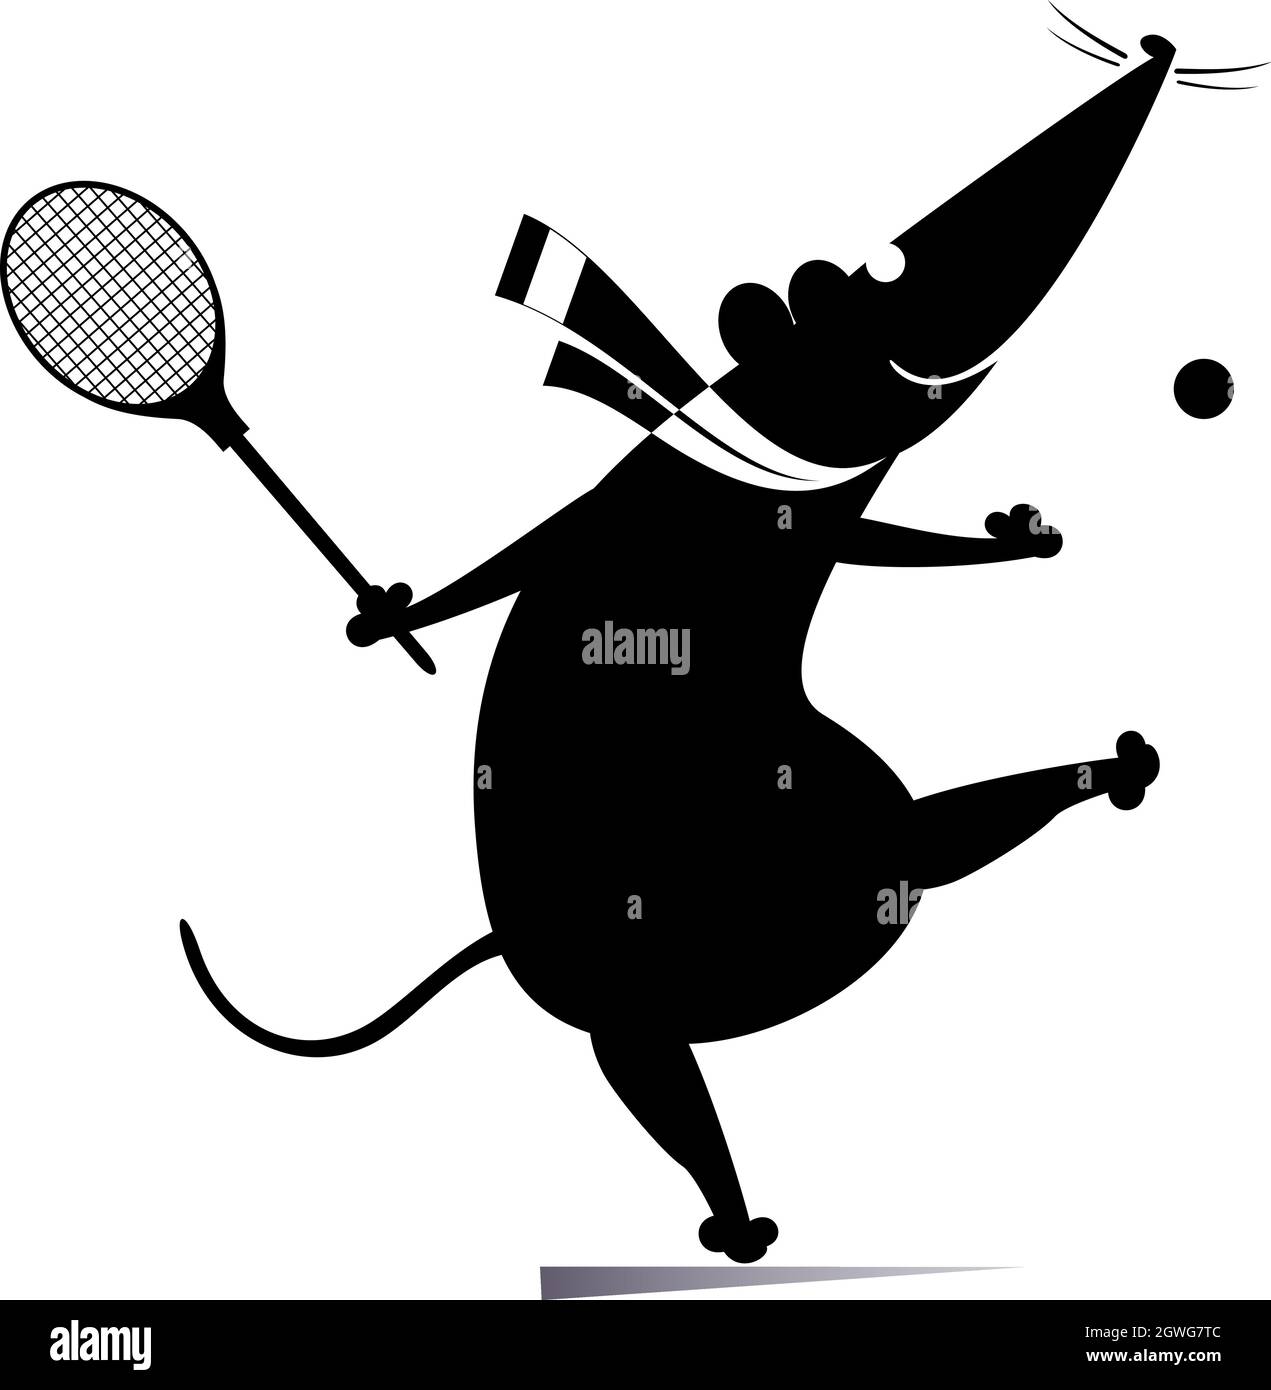 Drôle de rat ou de souris joue l'illustration de tennis. Dessin animé rat ou souris joue tennis noir sur blanc Illustration de Vecteur